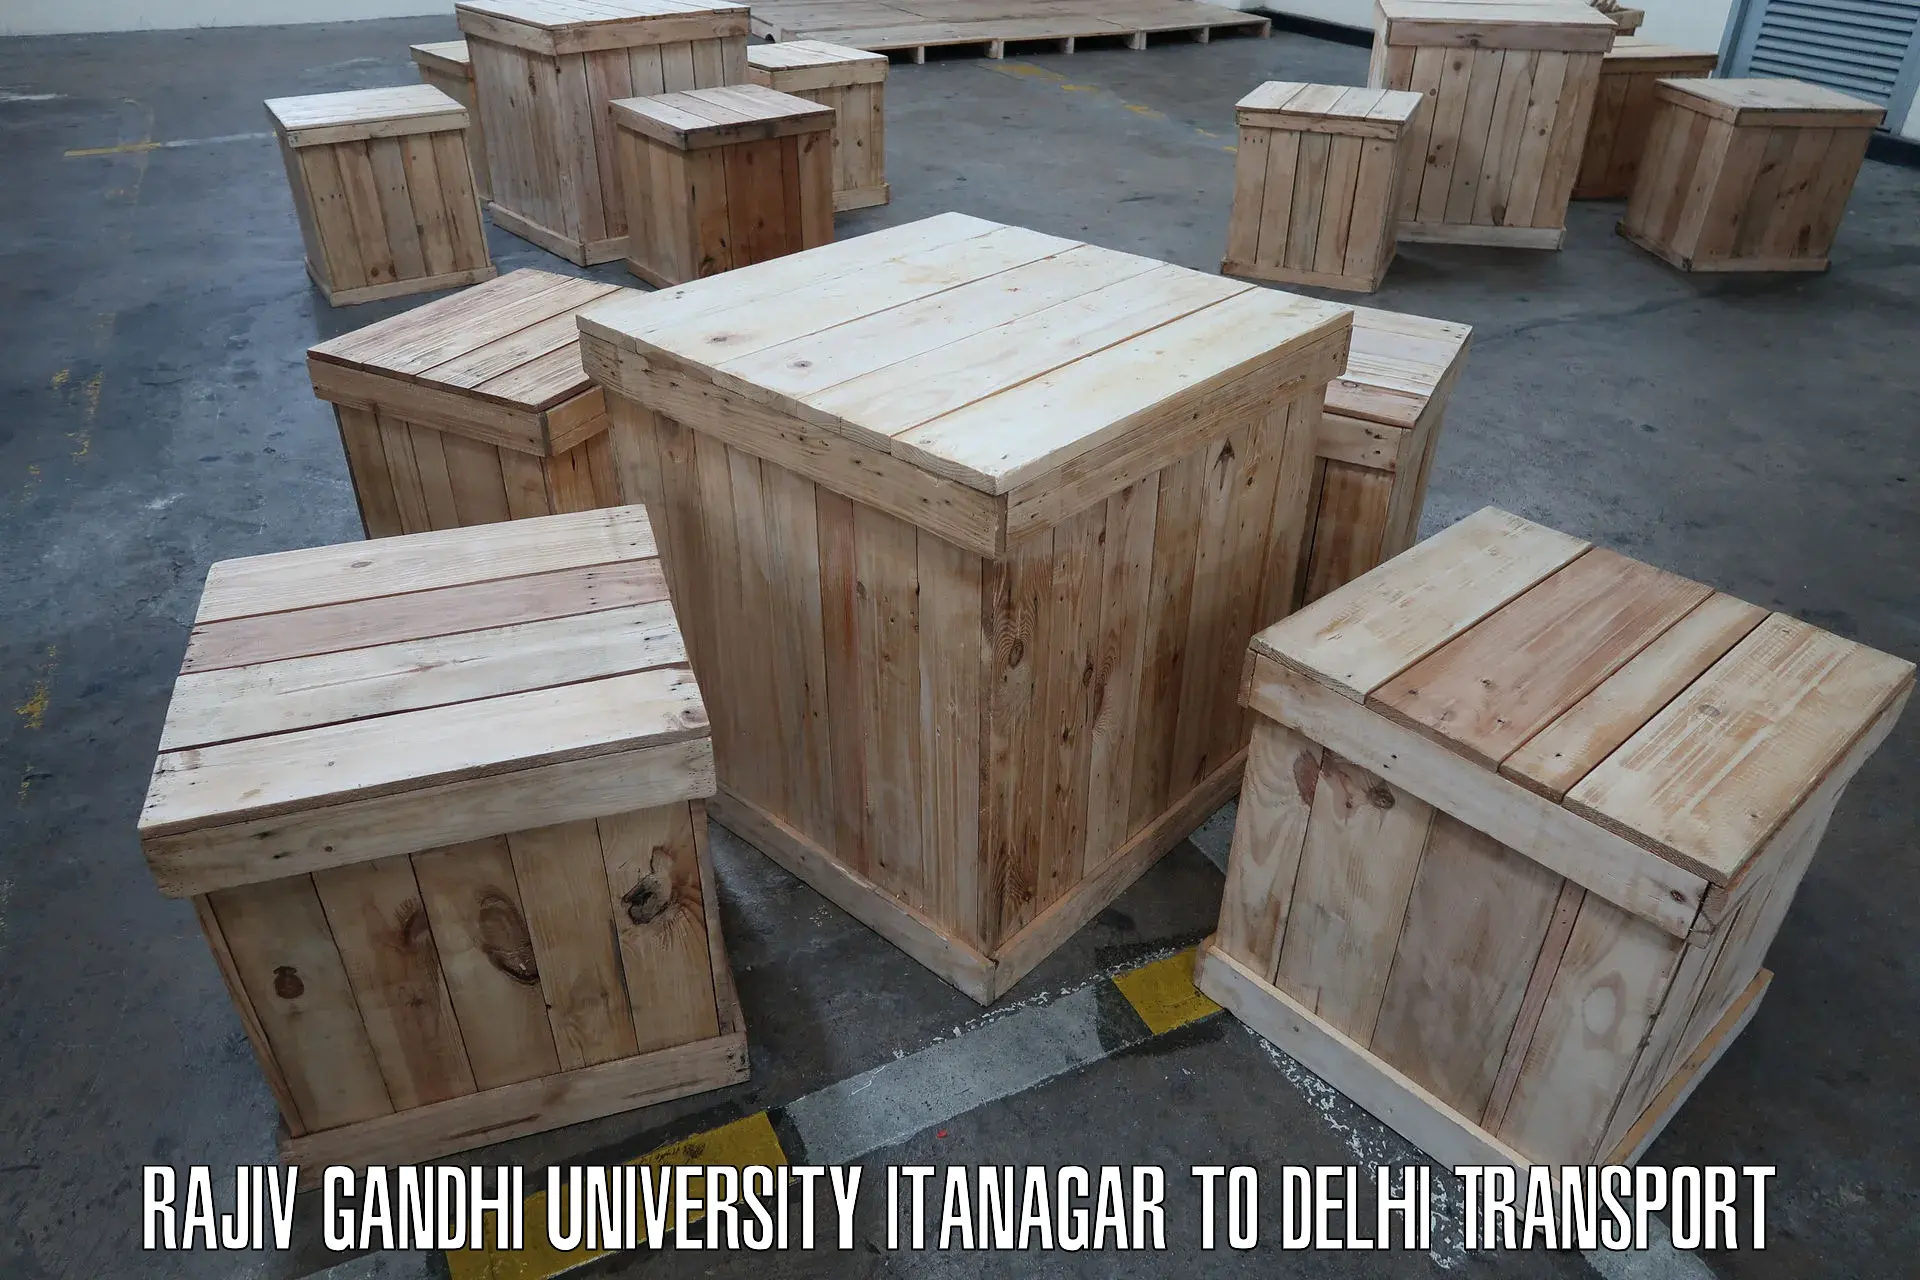 Transport bike from one state to another Rajiv Gandhi University Itanagar to Jawaharlal Nehru University New Delhi